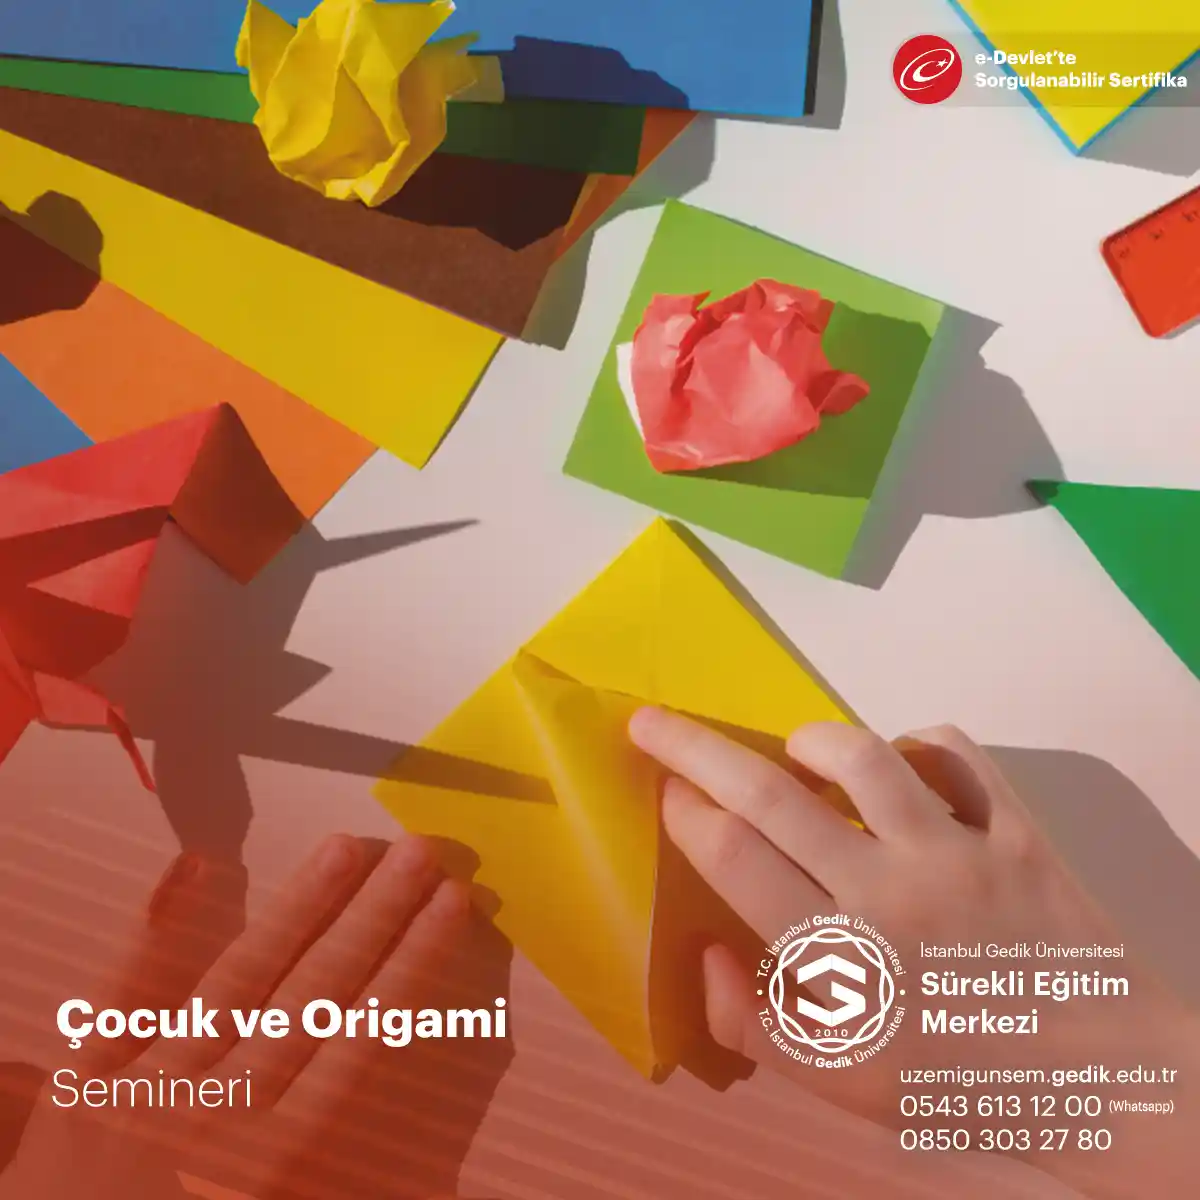 Çocuk ve Origami, çocukların kağıt katlama tekniklerini kullanarak yaratıcılık ve el becerilerini geliştirmelerini sağlayan bir eğitimdir. Bu eğitim, çocukların dikkat ve konsantrasyonlarını artırarak problem çözme becerilerini de geliştirir. Origami eğitimi, renkli ve desenli kağıtlar kullanarak çocukların hayal güçlerini de harekete geçirir. Origami, okul öncesi ve ilkokul çağındaki çocuklar için uygun bir eğitimdir ve hem eğlenceli hem de öğretici bir aktivitedir. Eğitim içeriği, basitten karmaşığa doğru ilerleyen kağıt katlama teknikleri içerir ve çocukların kendi yaratıcı projelerini oluşturmalarına izin verir.